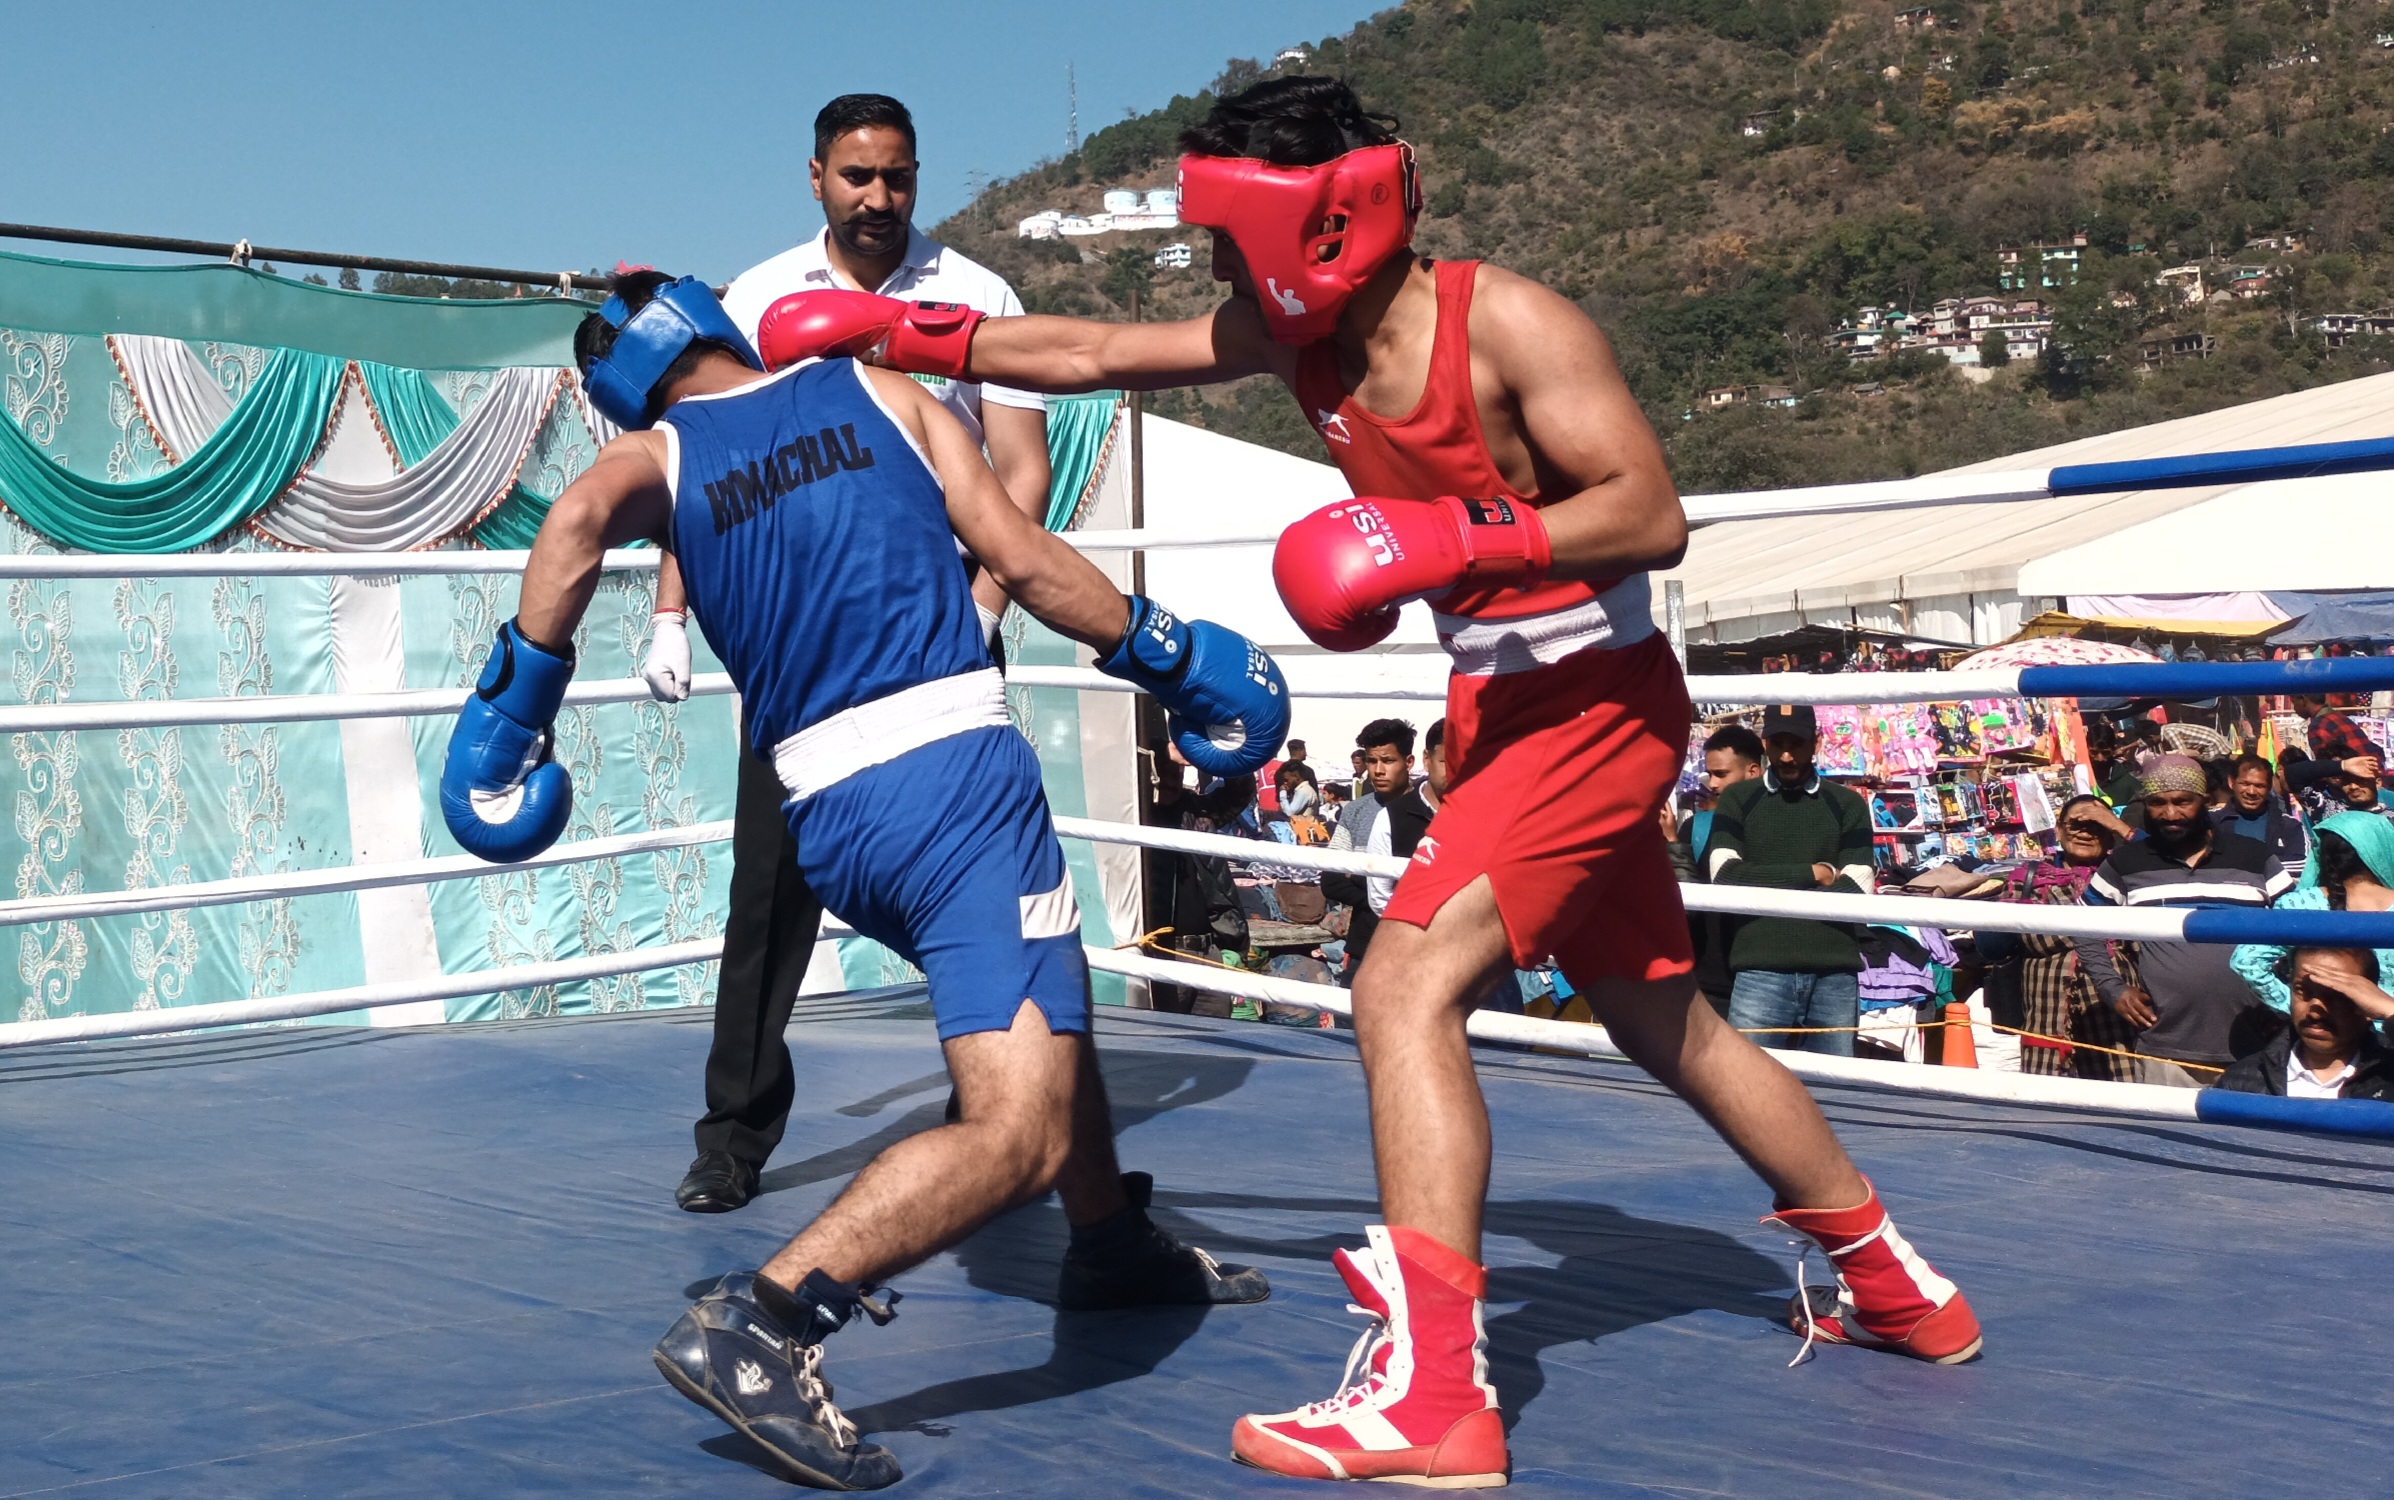 अंतरराष्ट्रीय शिवरात्रि महोत्सव के दौरान पड्डल मैदान में बॉक्सिंग प्रतियोगिता का आयोजन.